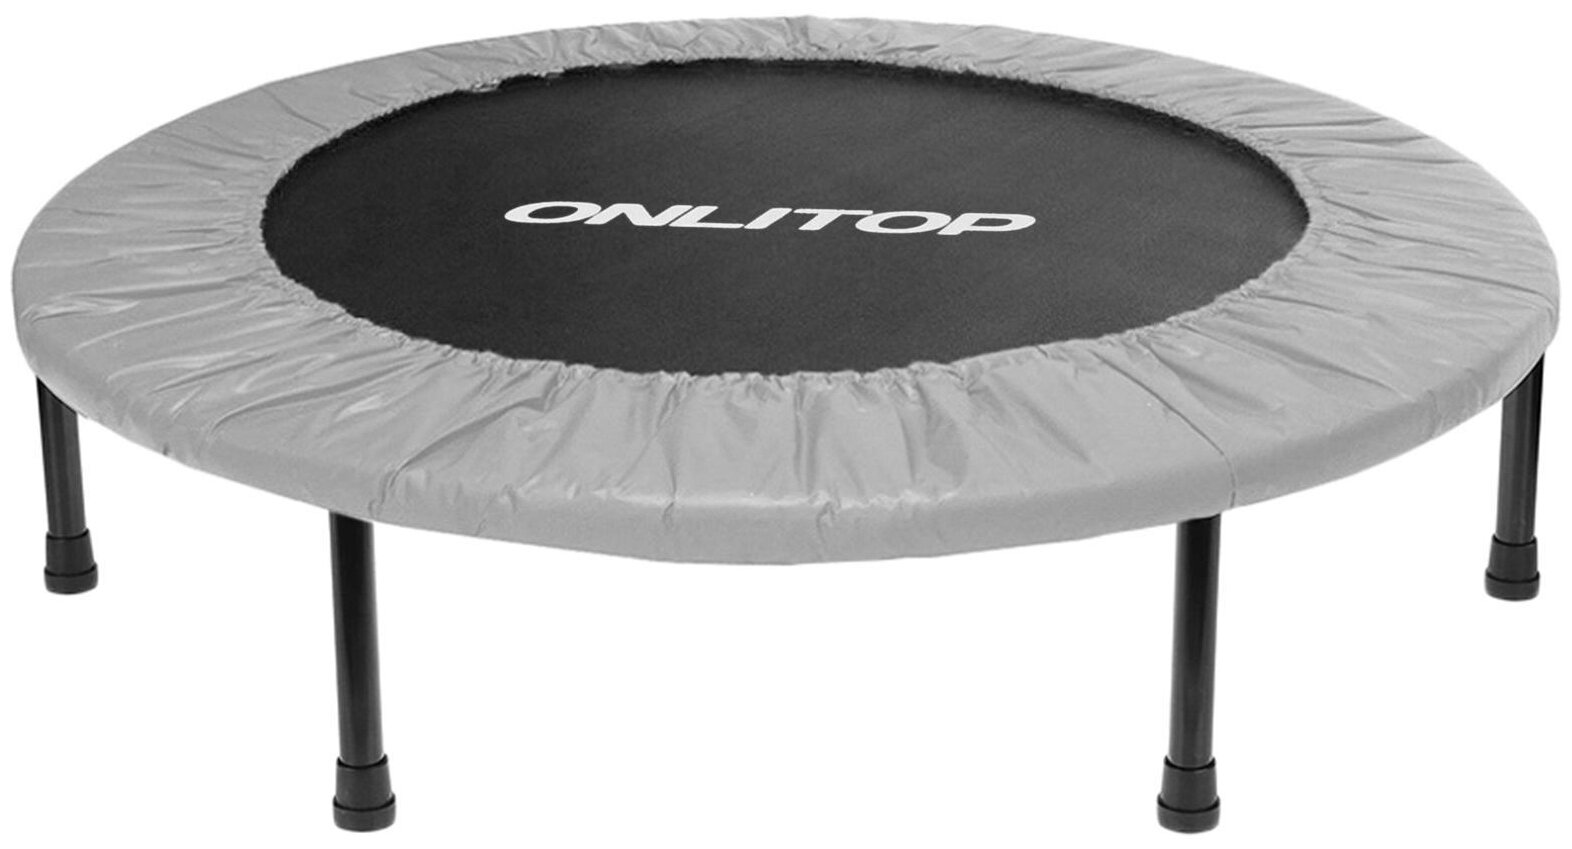 Батут ONLITOP, диаметр 101 см, максимально допустимый вес 80 кг, цвет серый